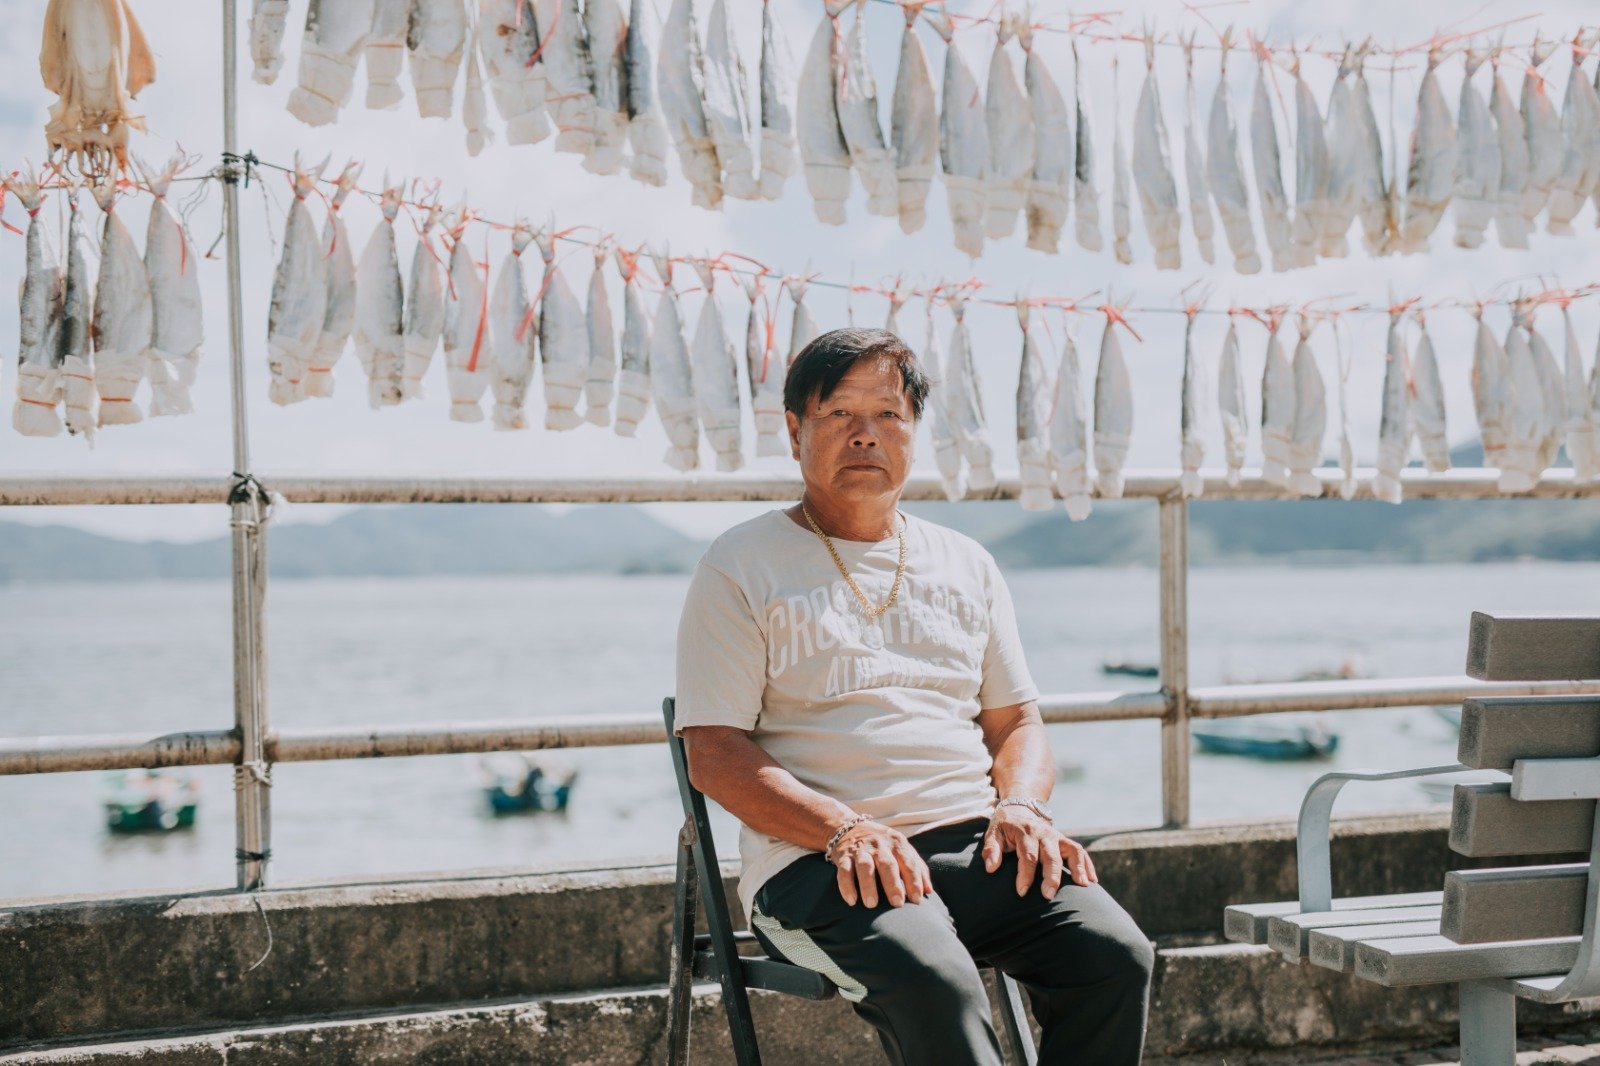 黎水勝指，人工島建完他應該已退休，不太影響其生計，但仍堅持發聲反對填海，「不只為自己，是為了漁民。」© Elvis Tang / Greenpeace